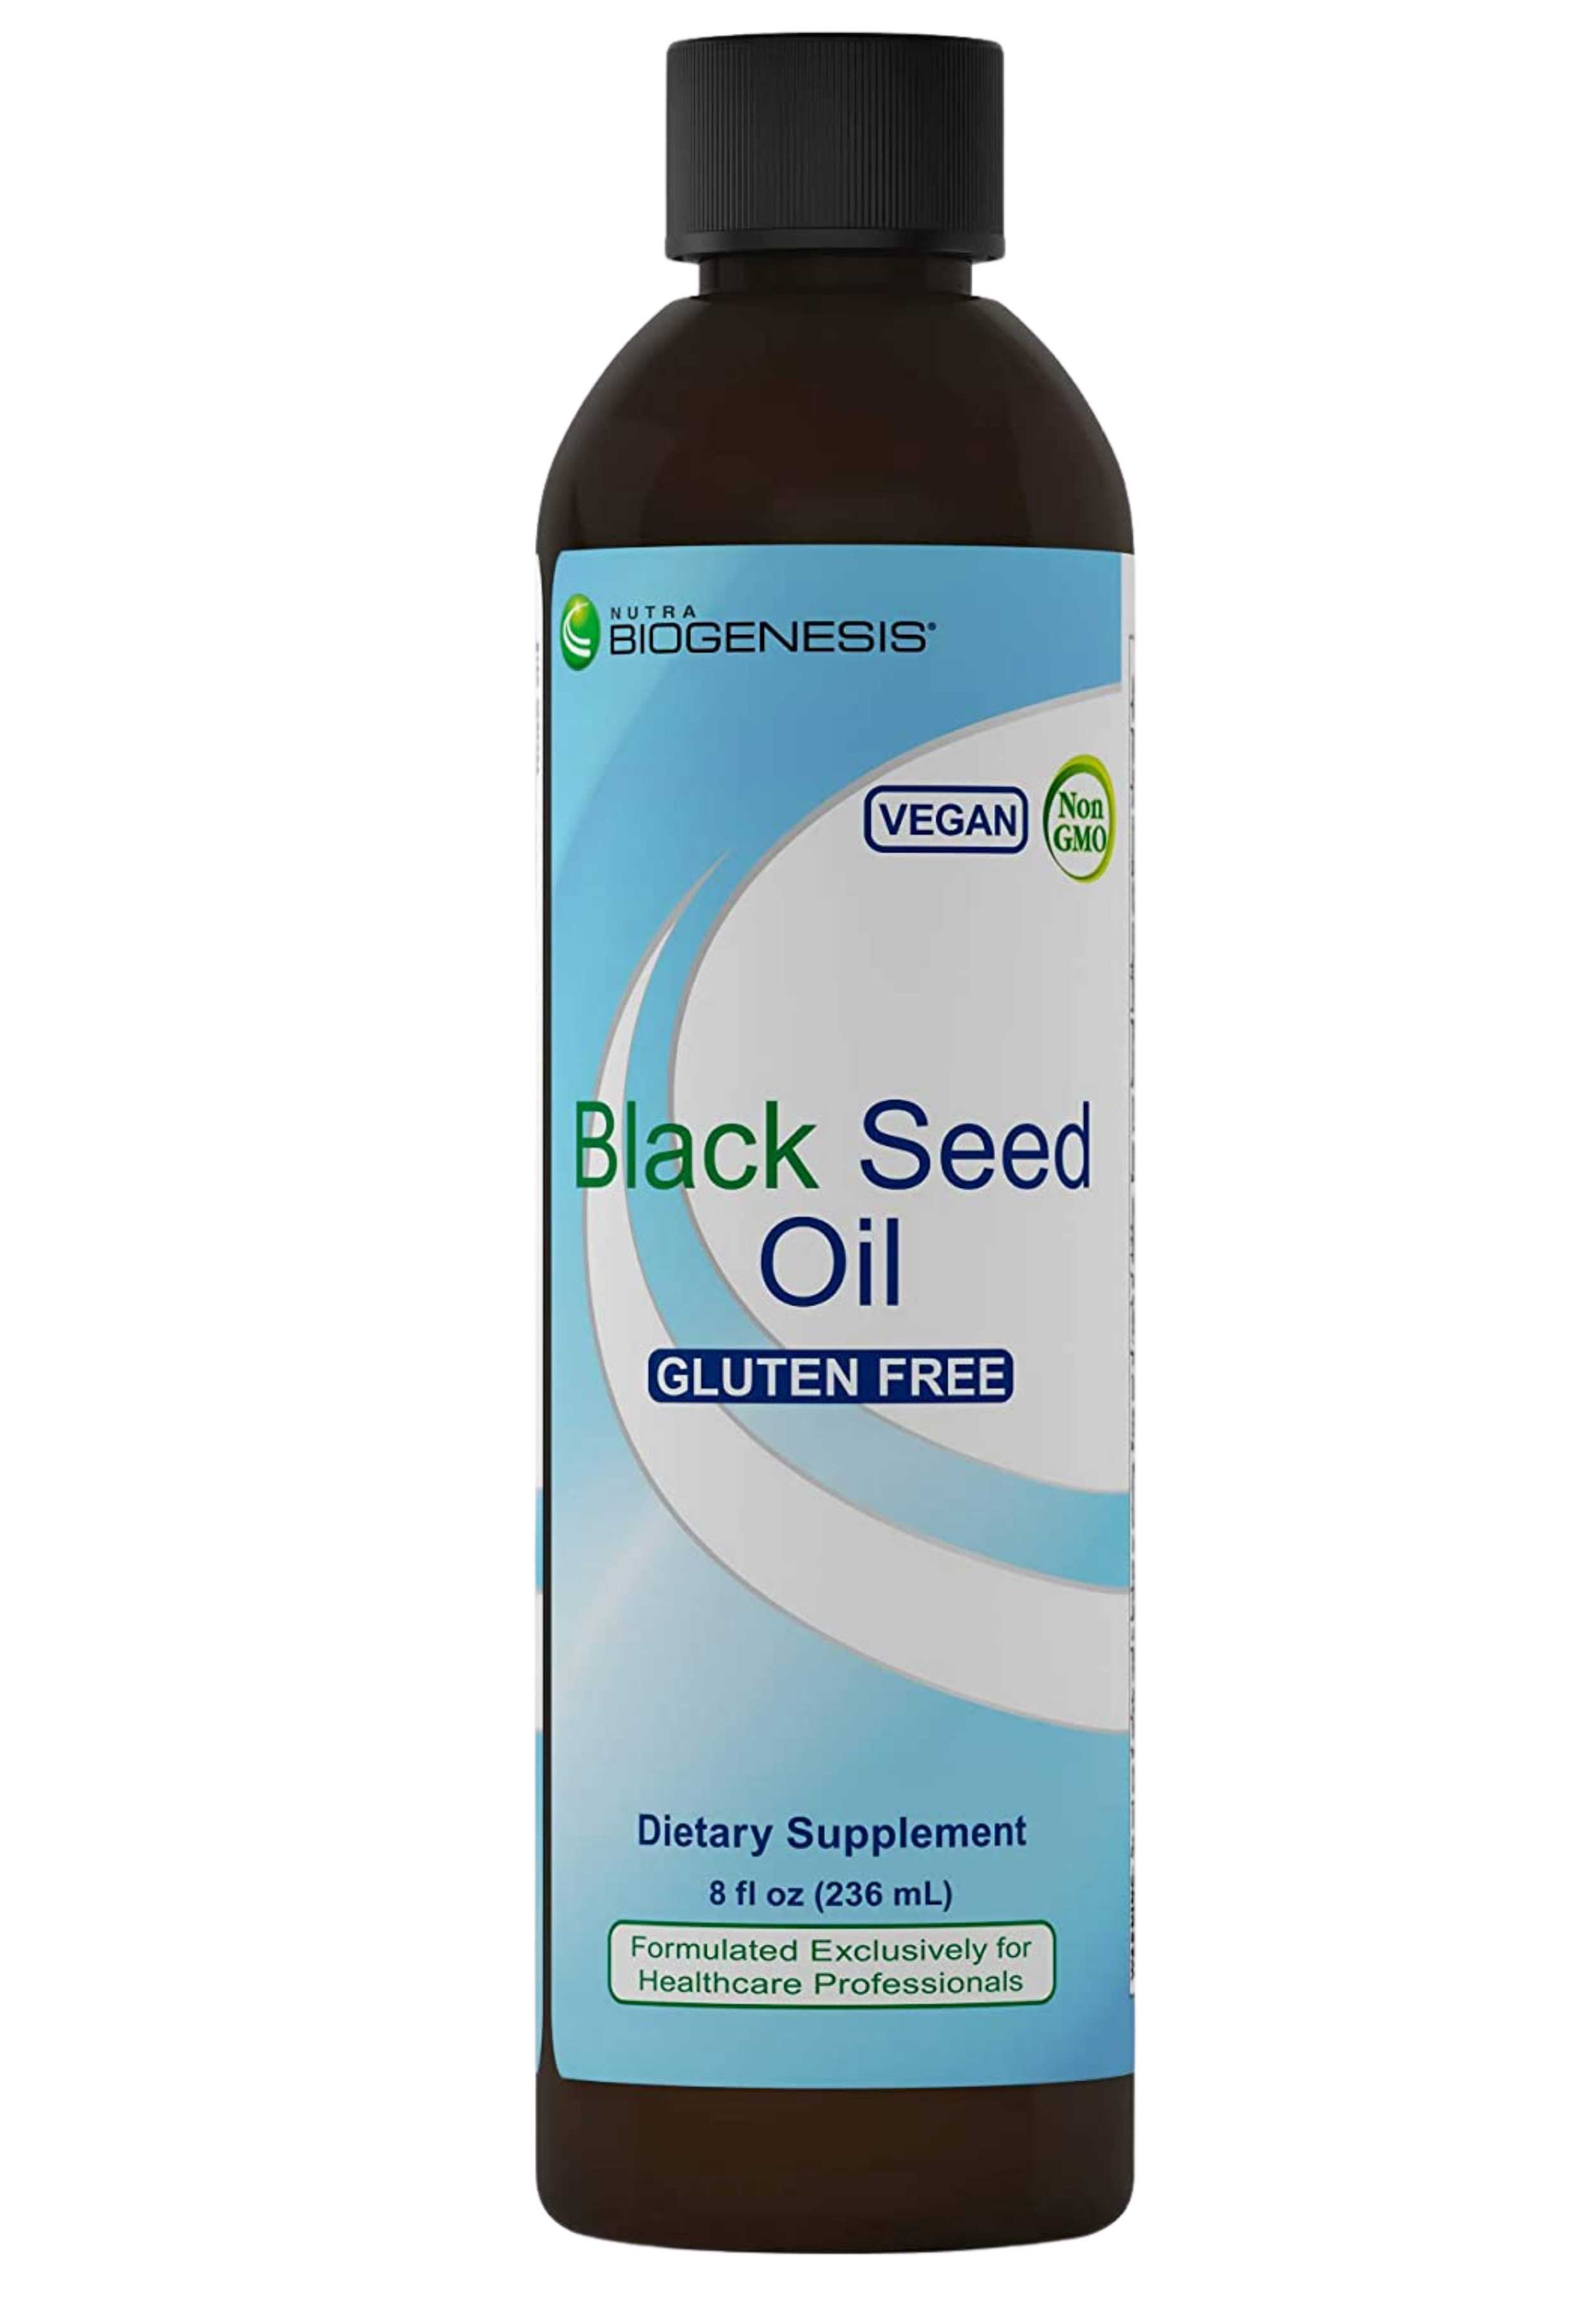 BioGenesis Black Seed Oil